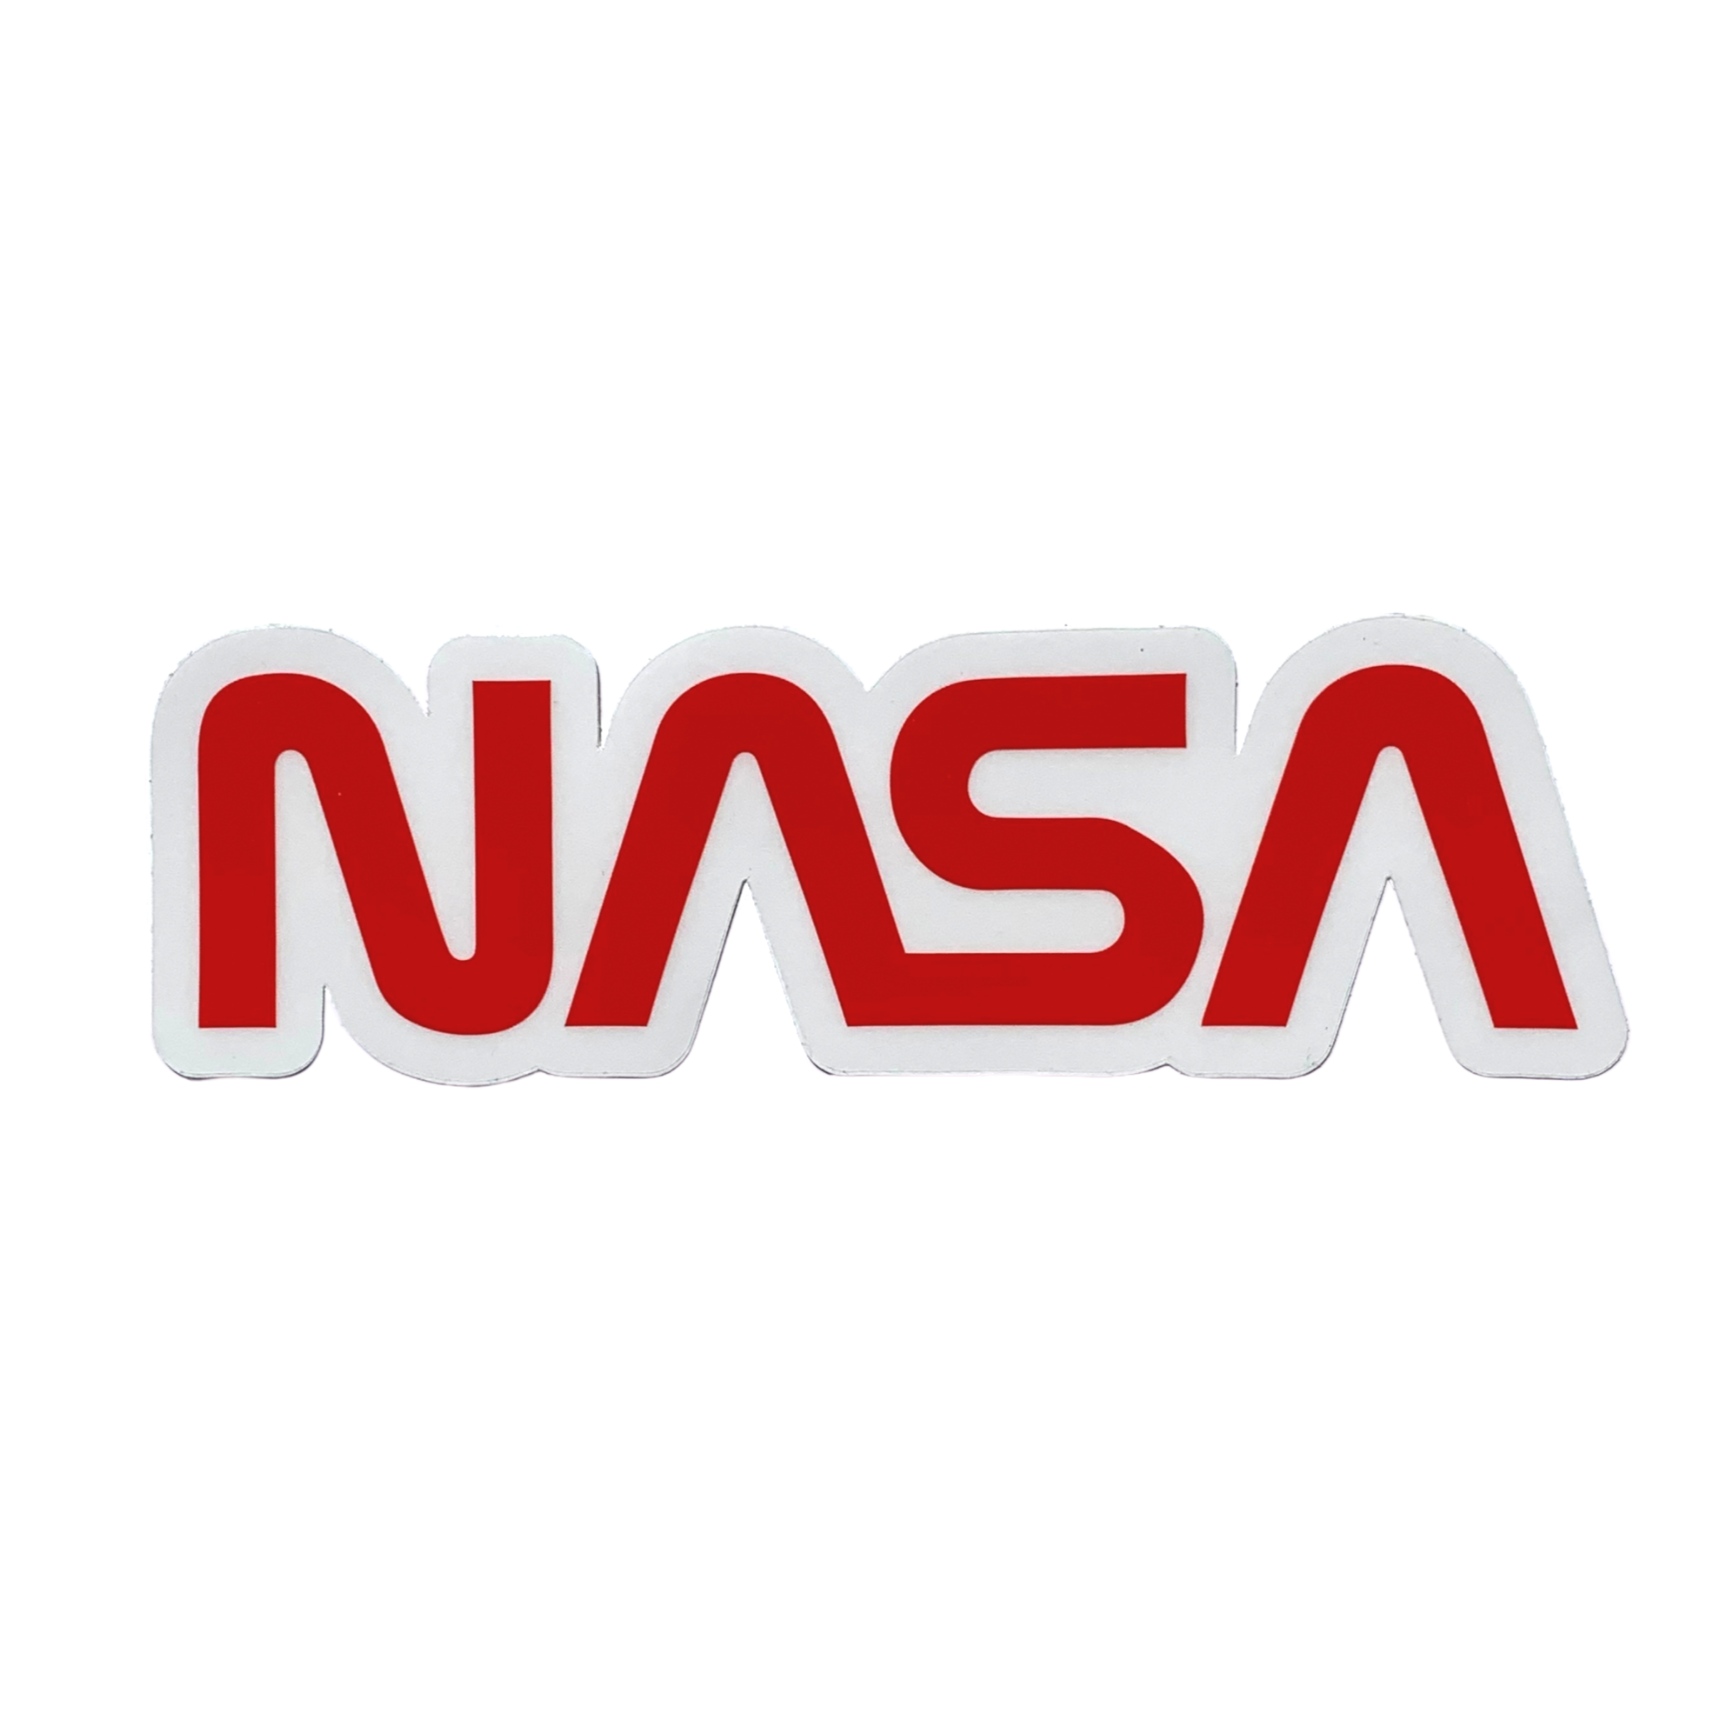 NASA Worm Vinyl Sticker